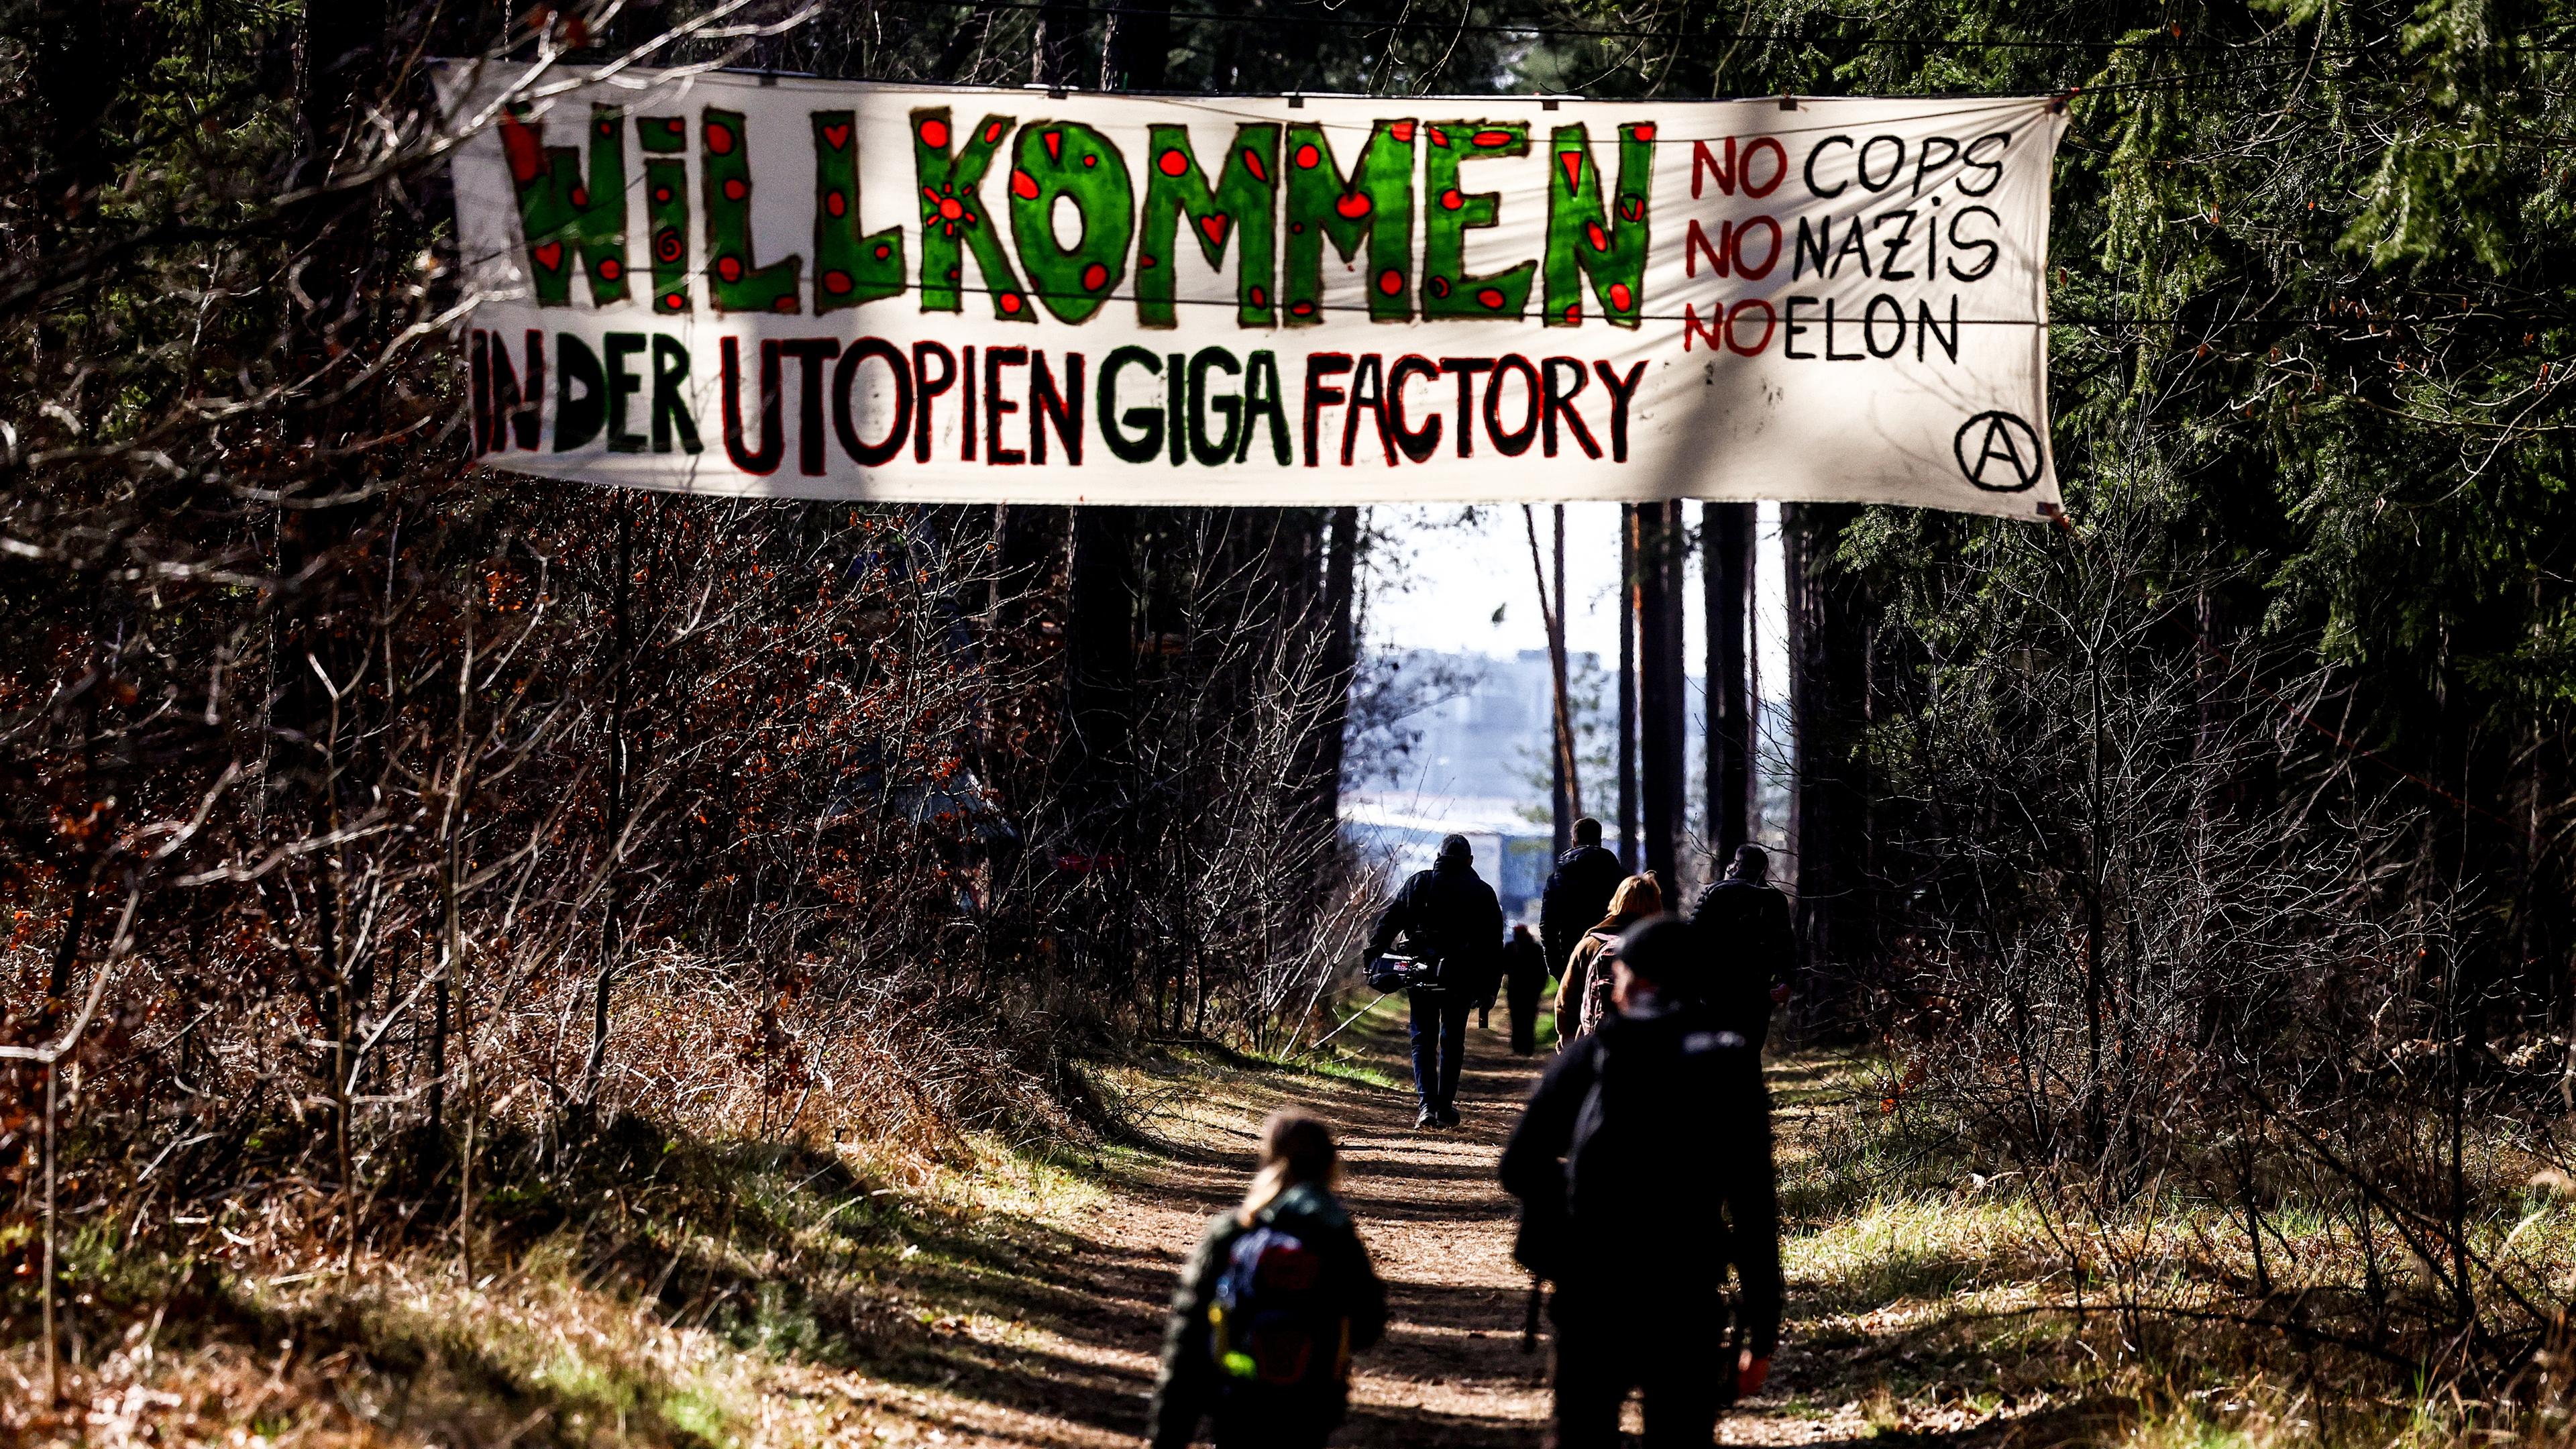 Umweltaktivistinen zeigen ein Banner mit der Aufschrift: "Willkommen in der Utopien Giga Factory" während eines Protestes gegen die Waldrodung zum Ausbau der Tesla Gigafactory in Grünheide.